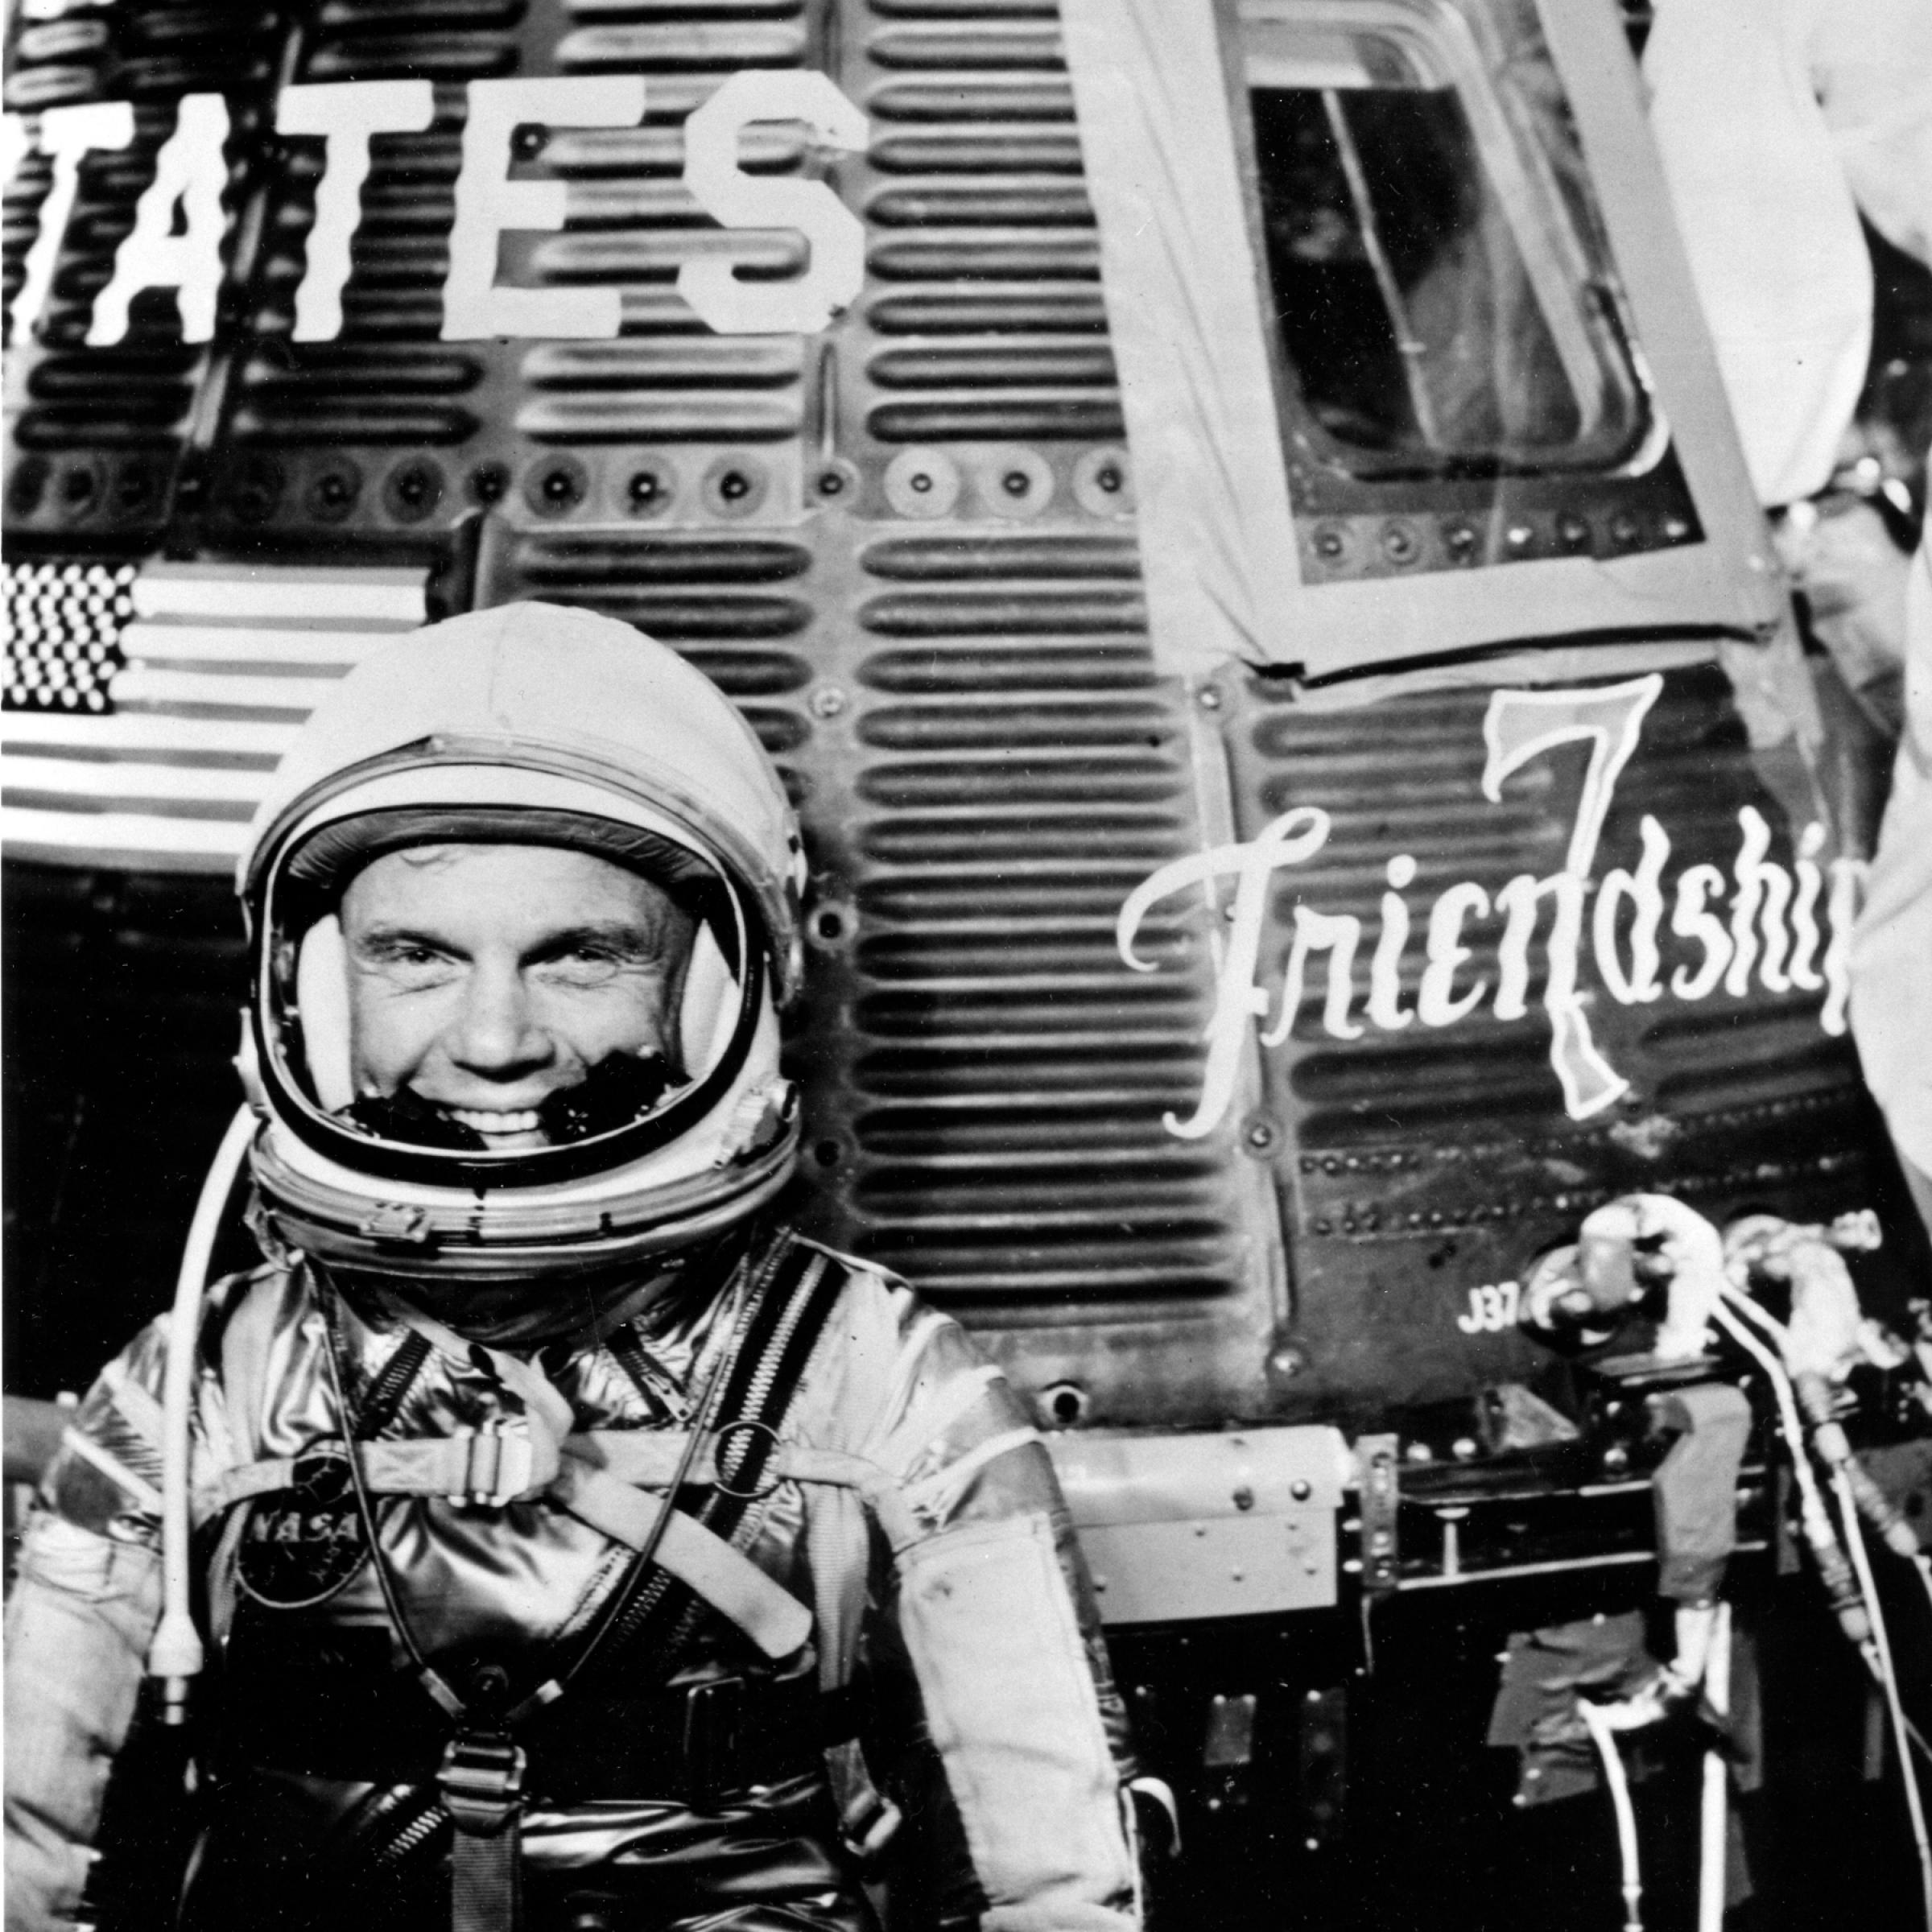 Ein Astronaut, John Glenn, im Raumanzug steht vor einer Mercury-Raumkapsel.